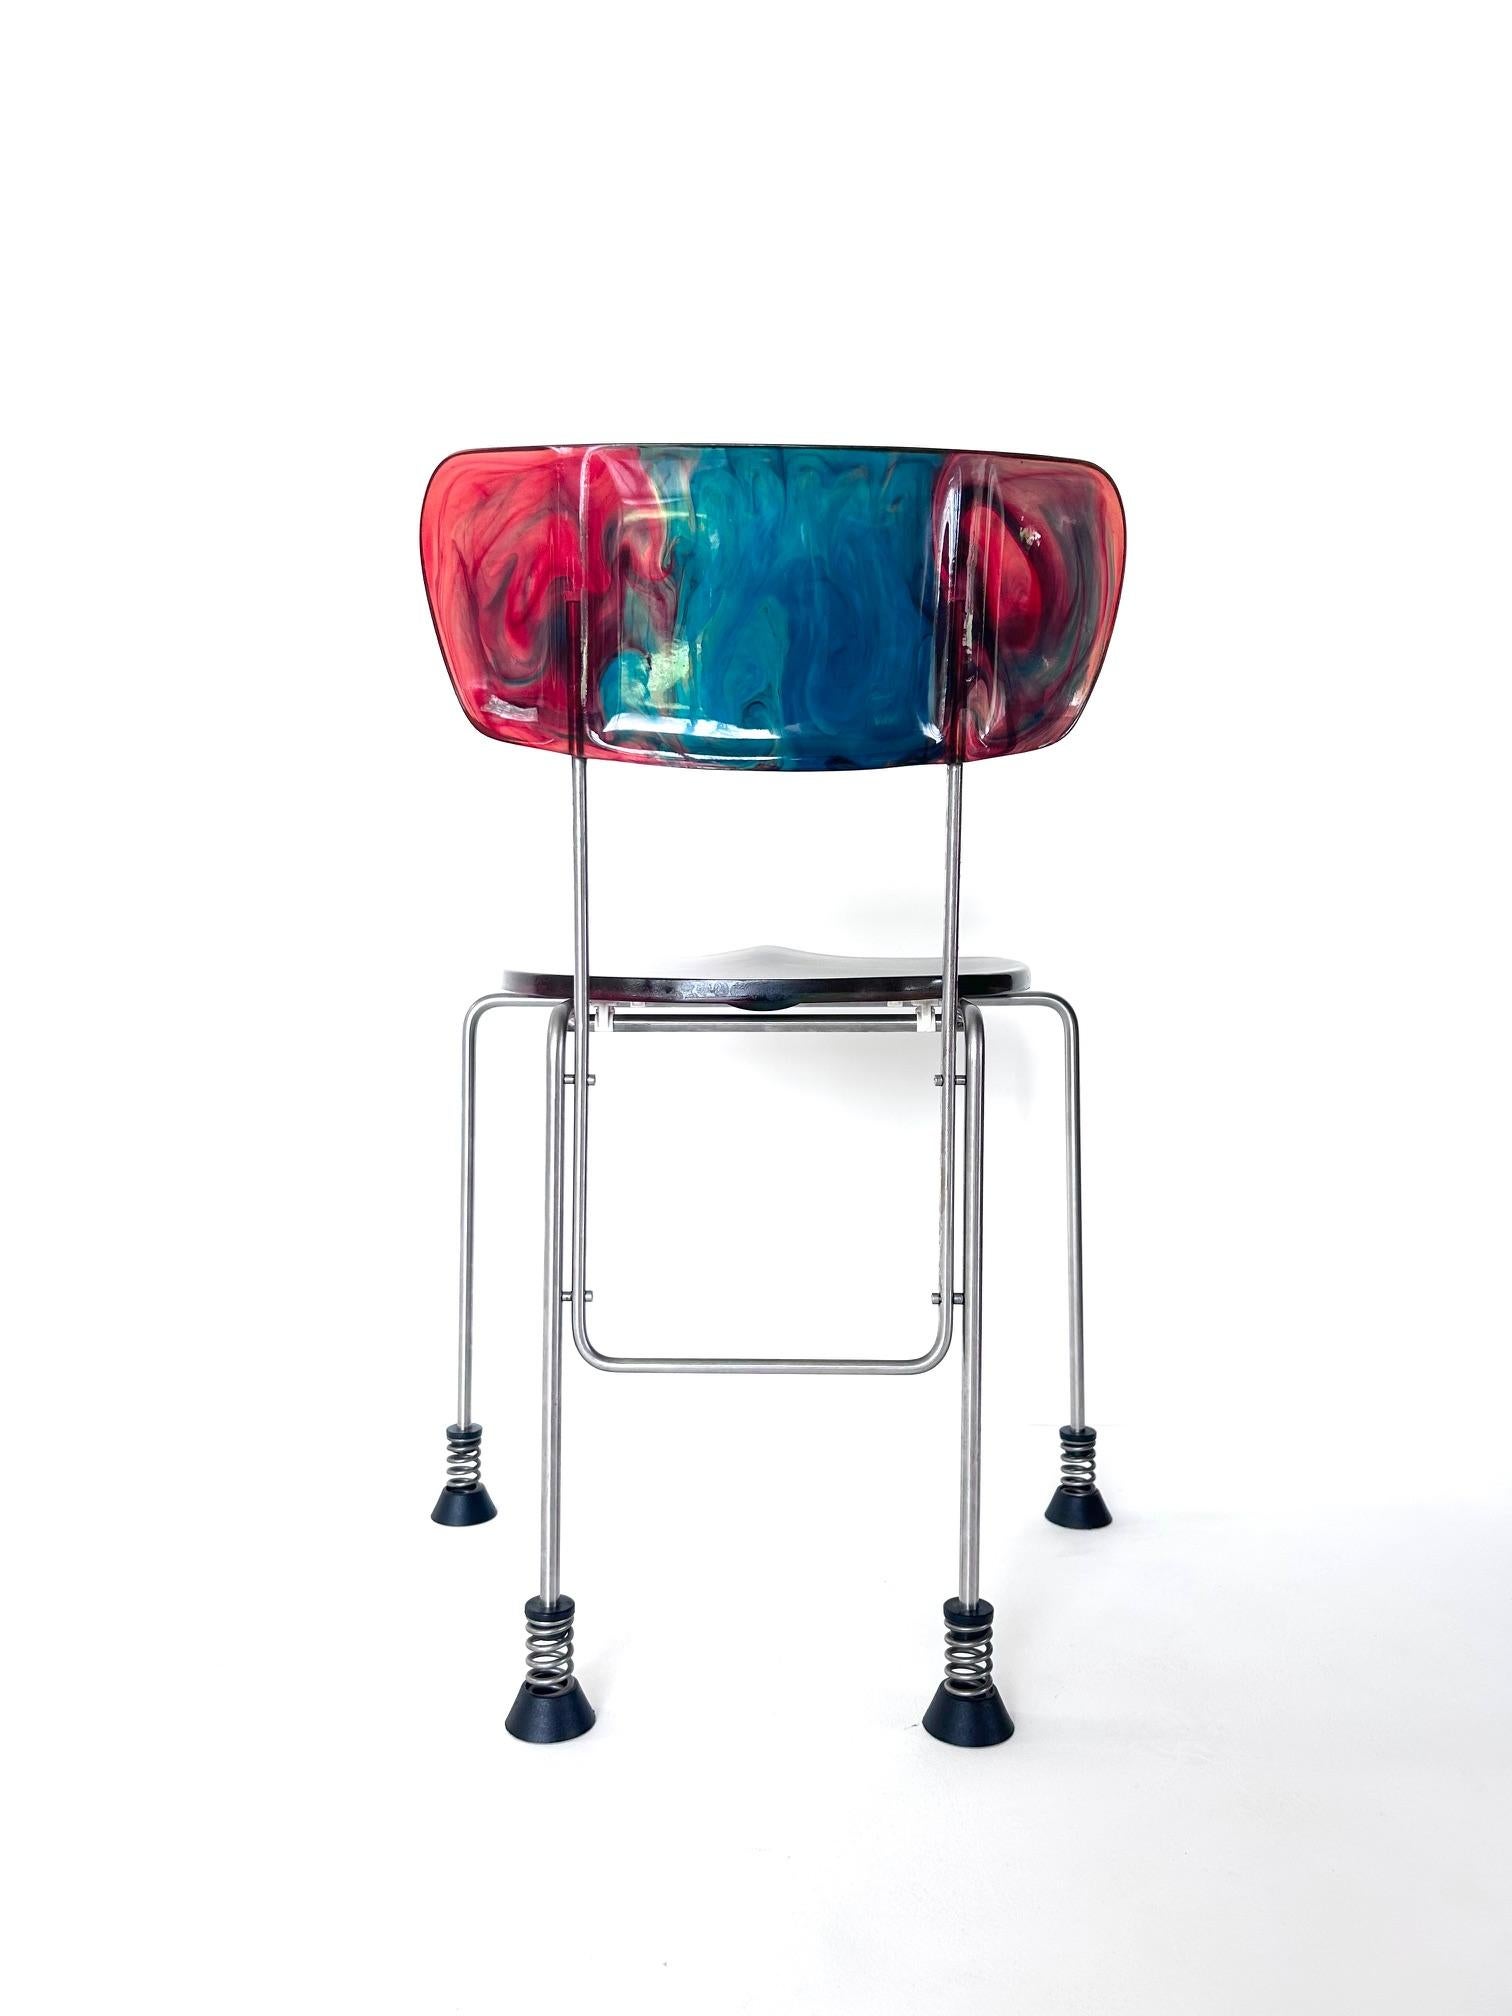 Broadway-Stuhl, Gaetano Pesce, Bernini, 1993

Gaetano Pesce 'Broadway' Stuhl, hergestellt von Bernini, mit vier auf Federn stehenden Gummifüßen. 
Modell 543, 1993 für Bernini entworfen
Rückenlehne und Sitz aus Epoxidharz
Struktur aus rostfreiem Stahl